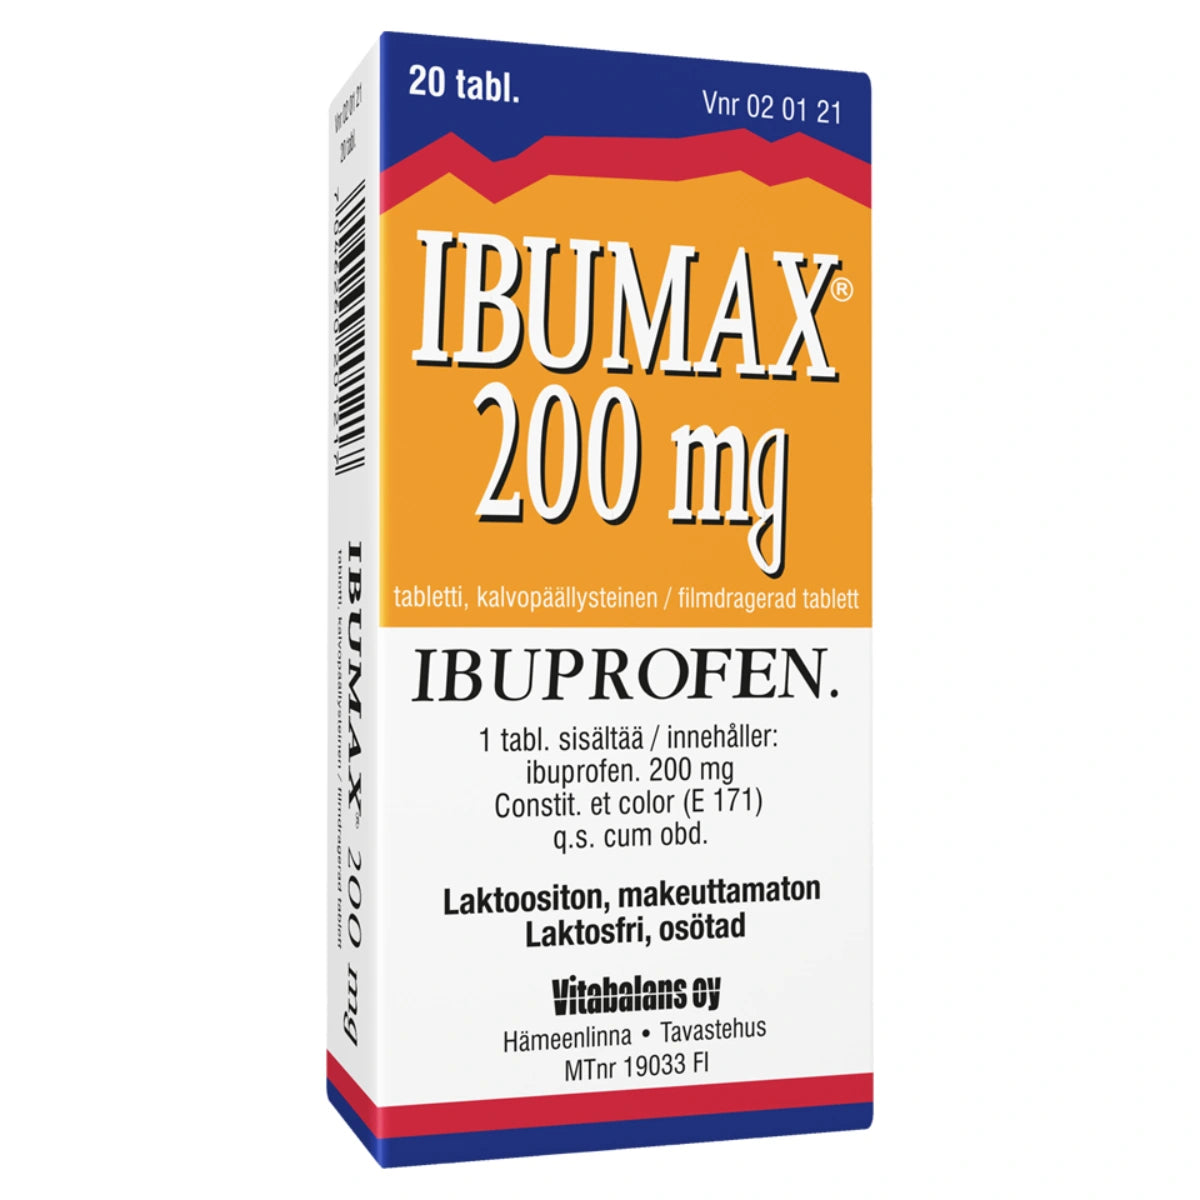 IBUMAX 200 mg tabletti, kalvopäällysteinen 20 kpl